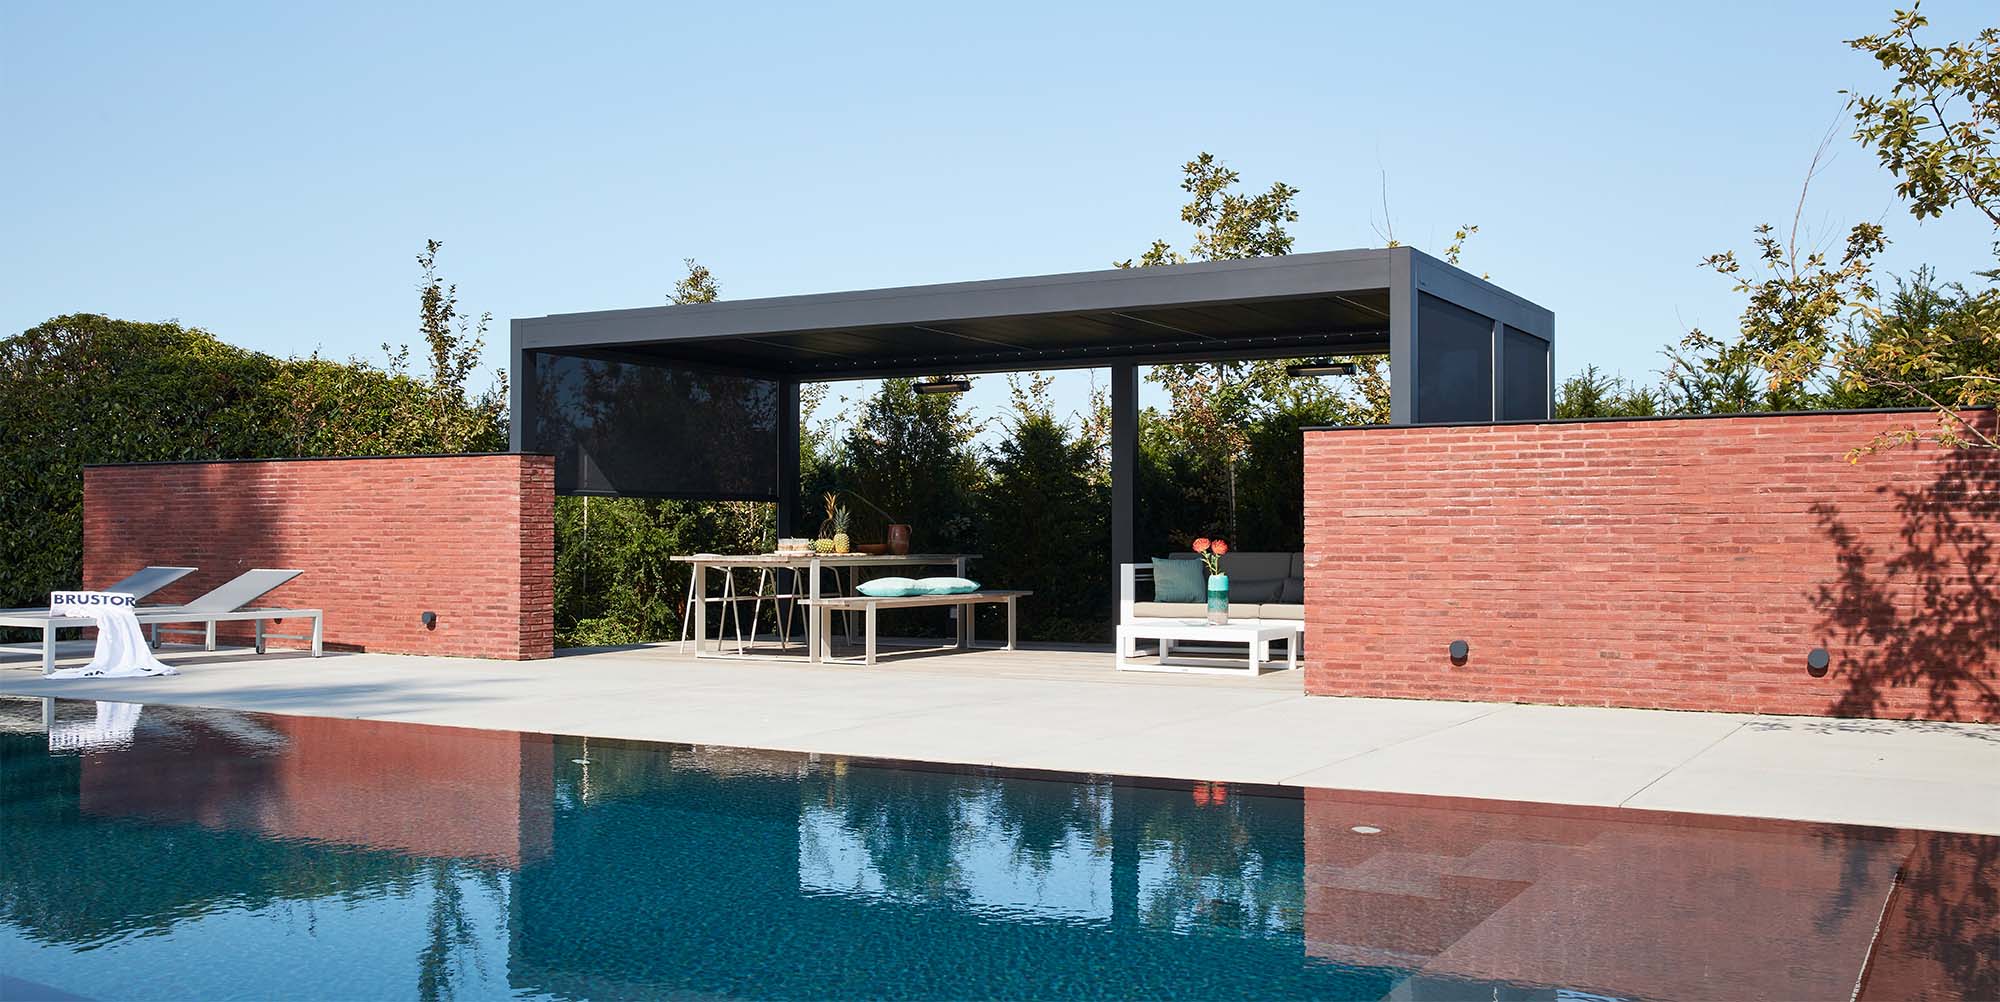 Lamellendach-Pergola mit seitlichen Textilscreens als Überdachung einer Terrasse mit Pool